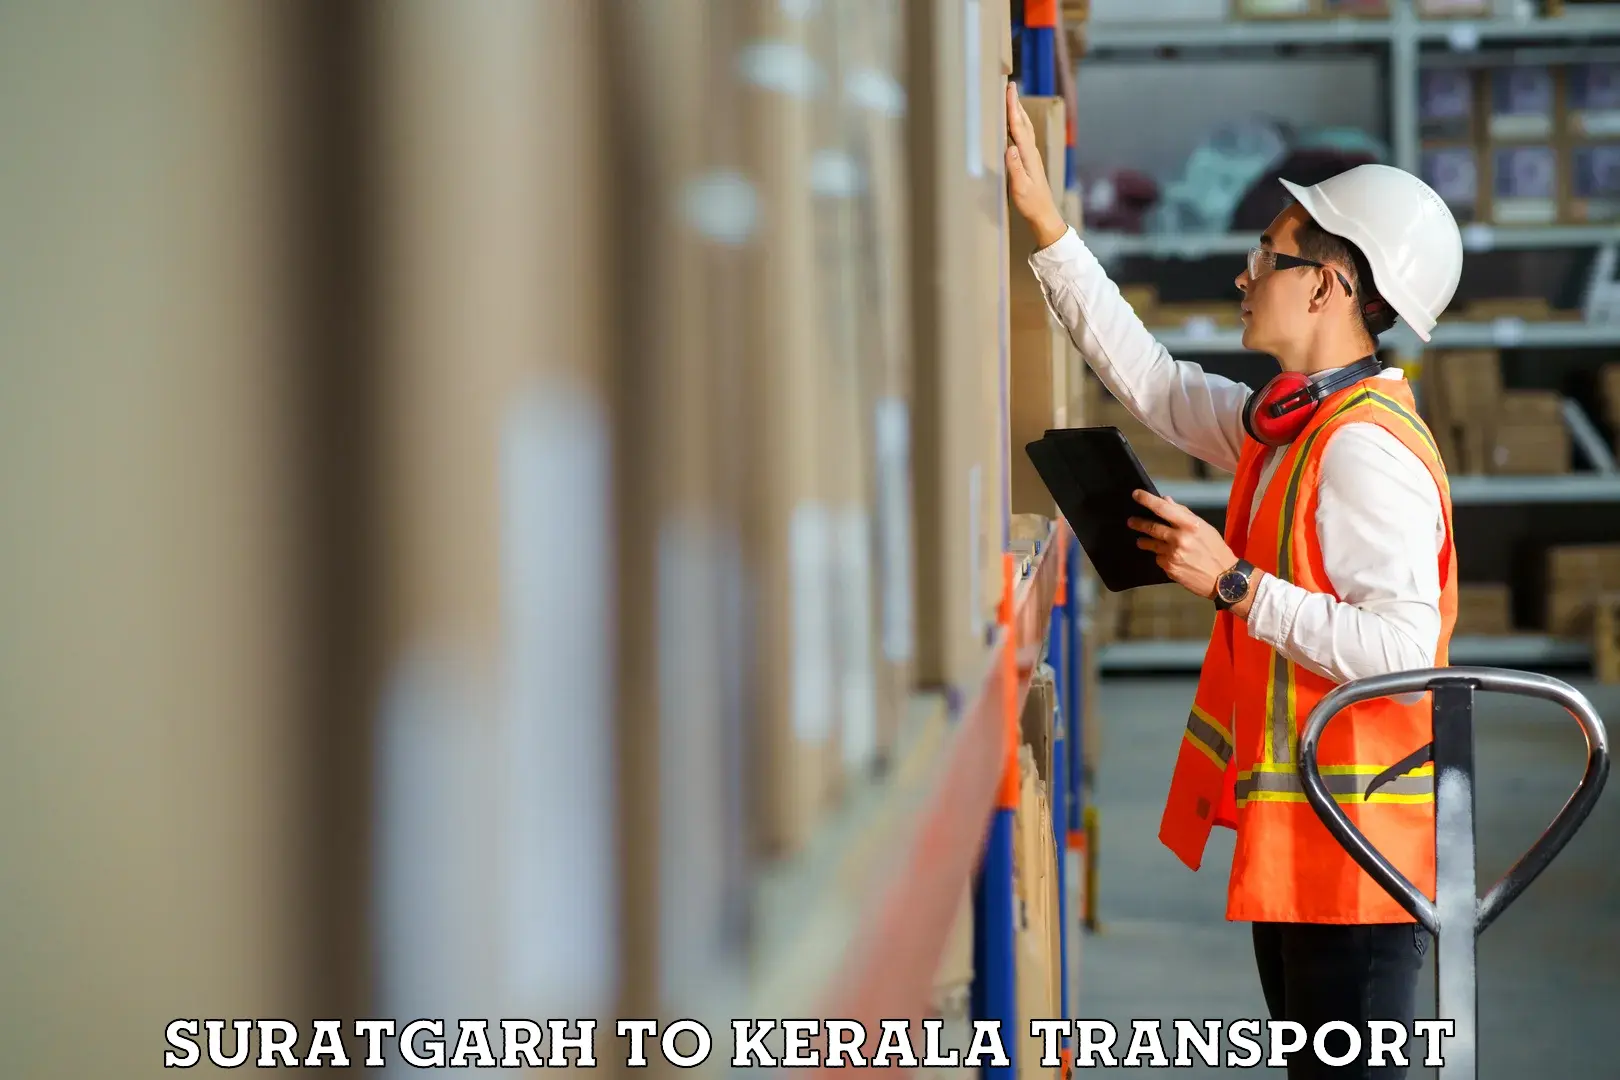 Express transport services Suratgarh to Thiruvananthapuram